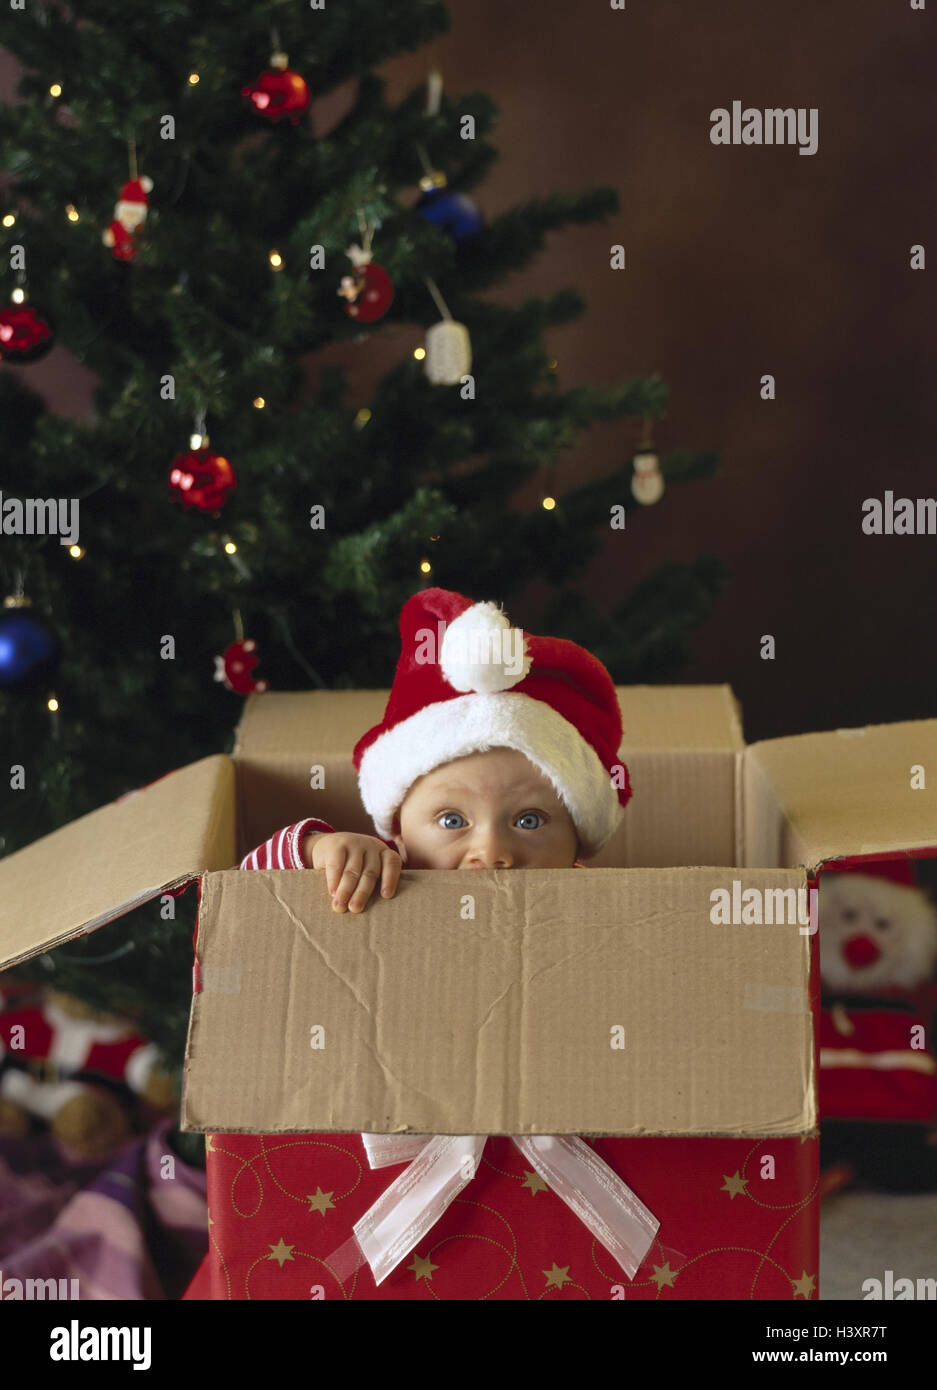 Cadeau de Noël, carton, bébé, Santa's hat, Noël, arbre de Noël, arbre de  Noël, pour Noël, présent, enfant, nourrisson, vieille personne, 9 mois, de  l'enfance, joue, masquer, curiosité, surprise de Noël, enfant,